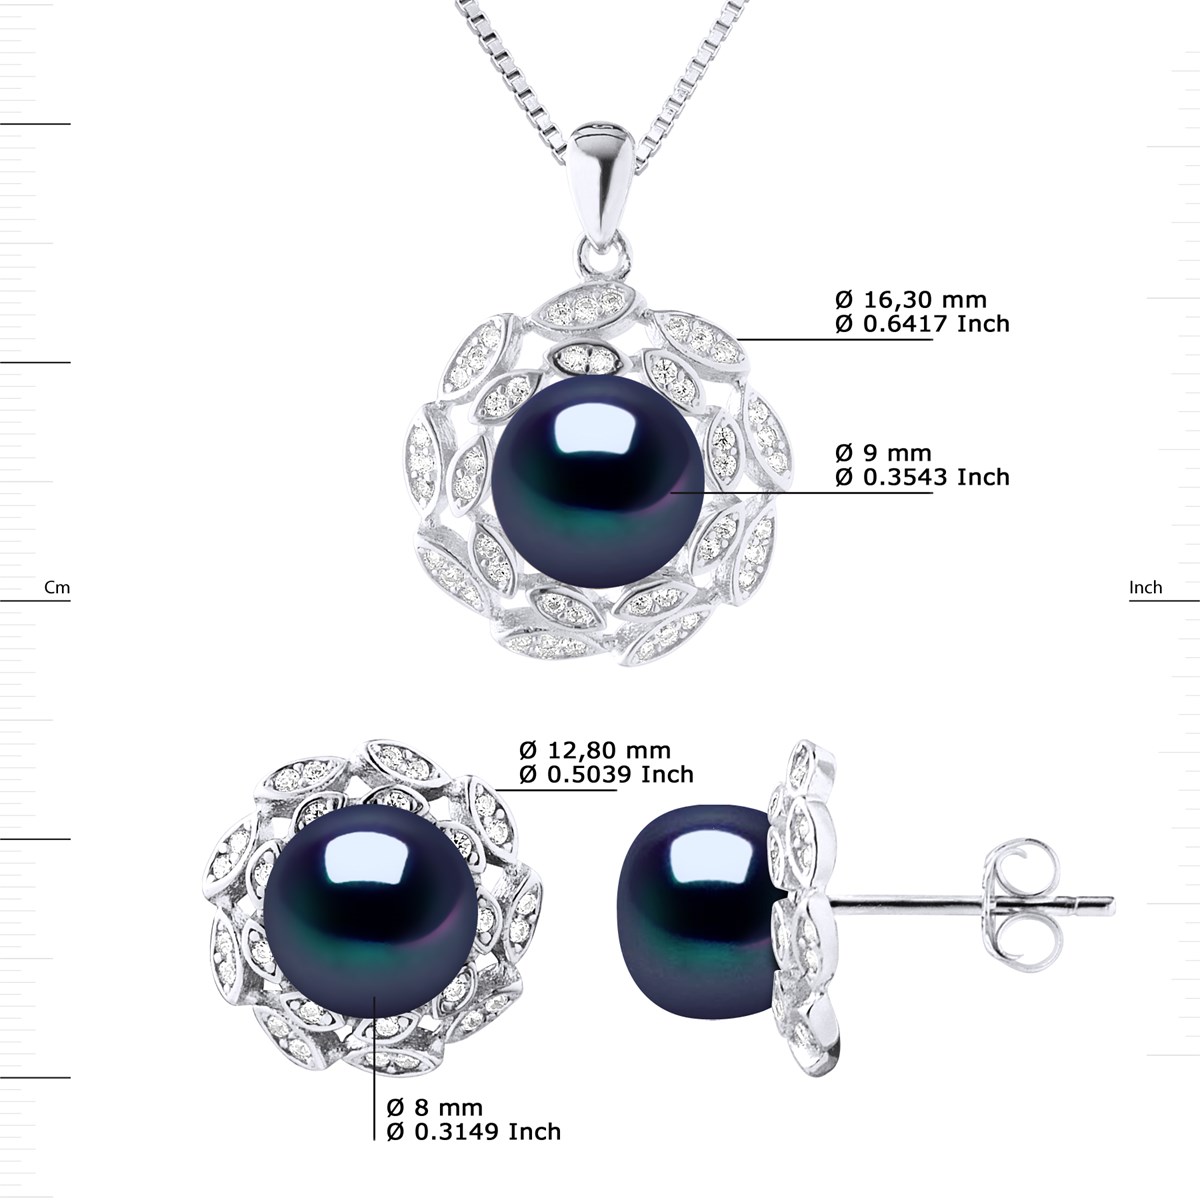 Parure Collier 9-10 mm & Boucles d'Oreilles FLEUR Perles d'Eau Douce 9-10 mm Noires Argent 925 - vue 3